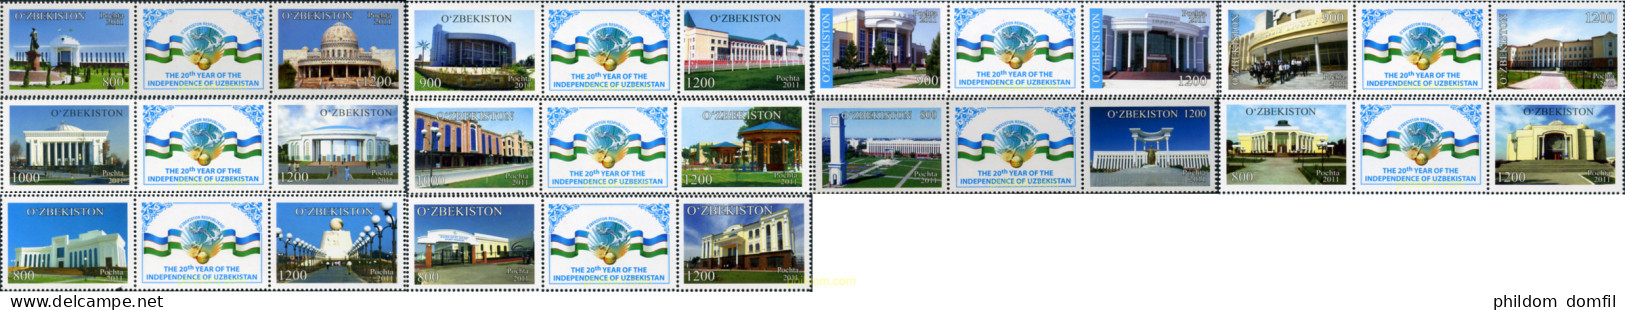 347763 MNH UZBEKISTAN 2011 20 ANIVERSARIO DE LA INDEPENDENCIA DE UZBEKISTAN - Uzbekistan